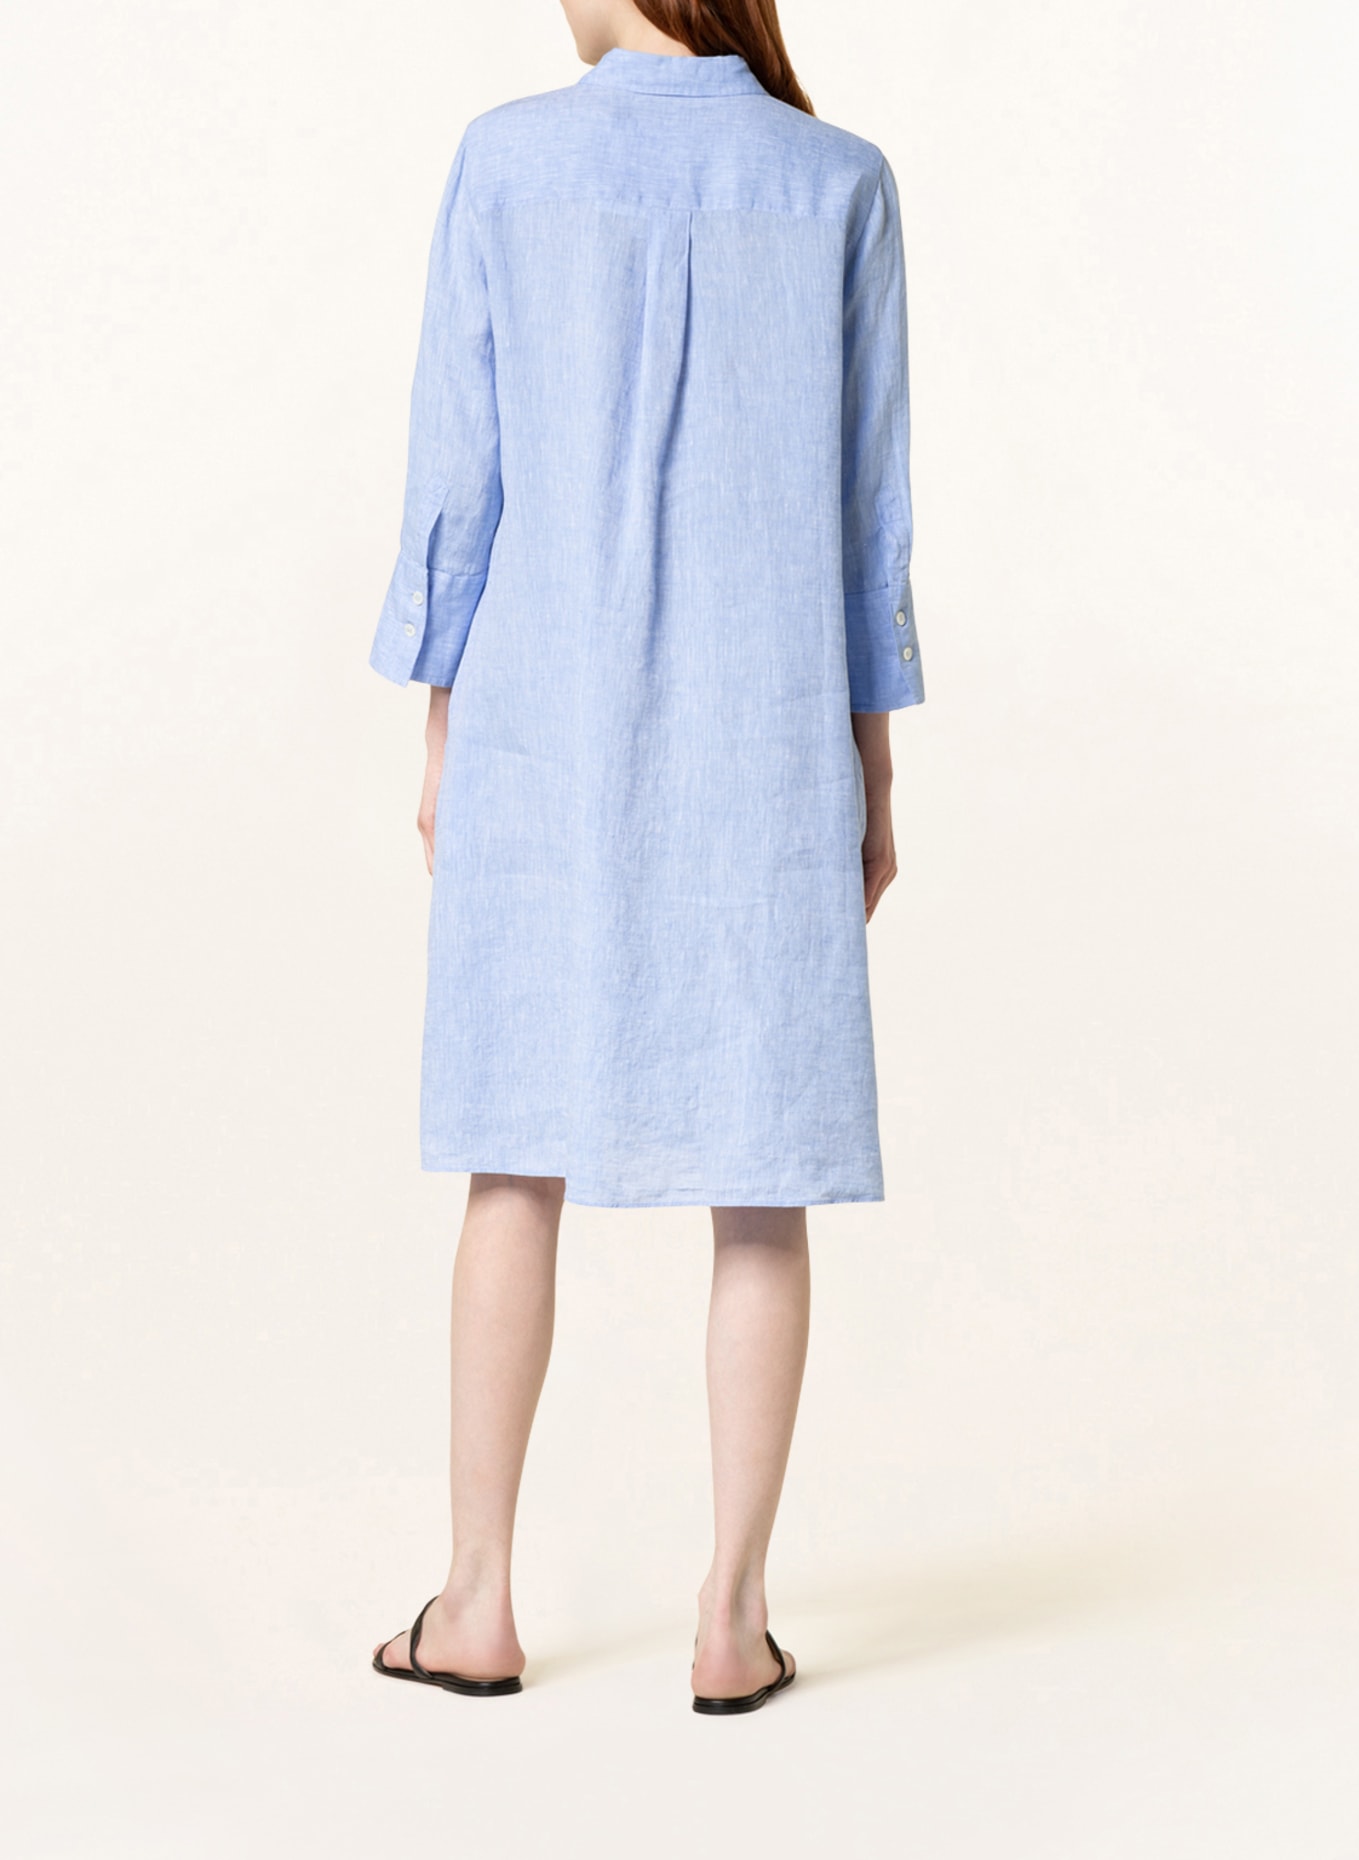 ROBERT FRIEDMAN Shirt dress LENA made of linen, Color: LIGHT BLUE (Image 3)